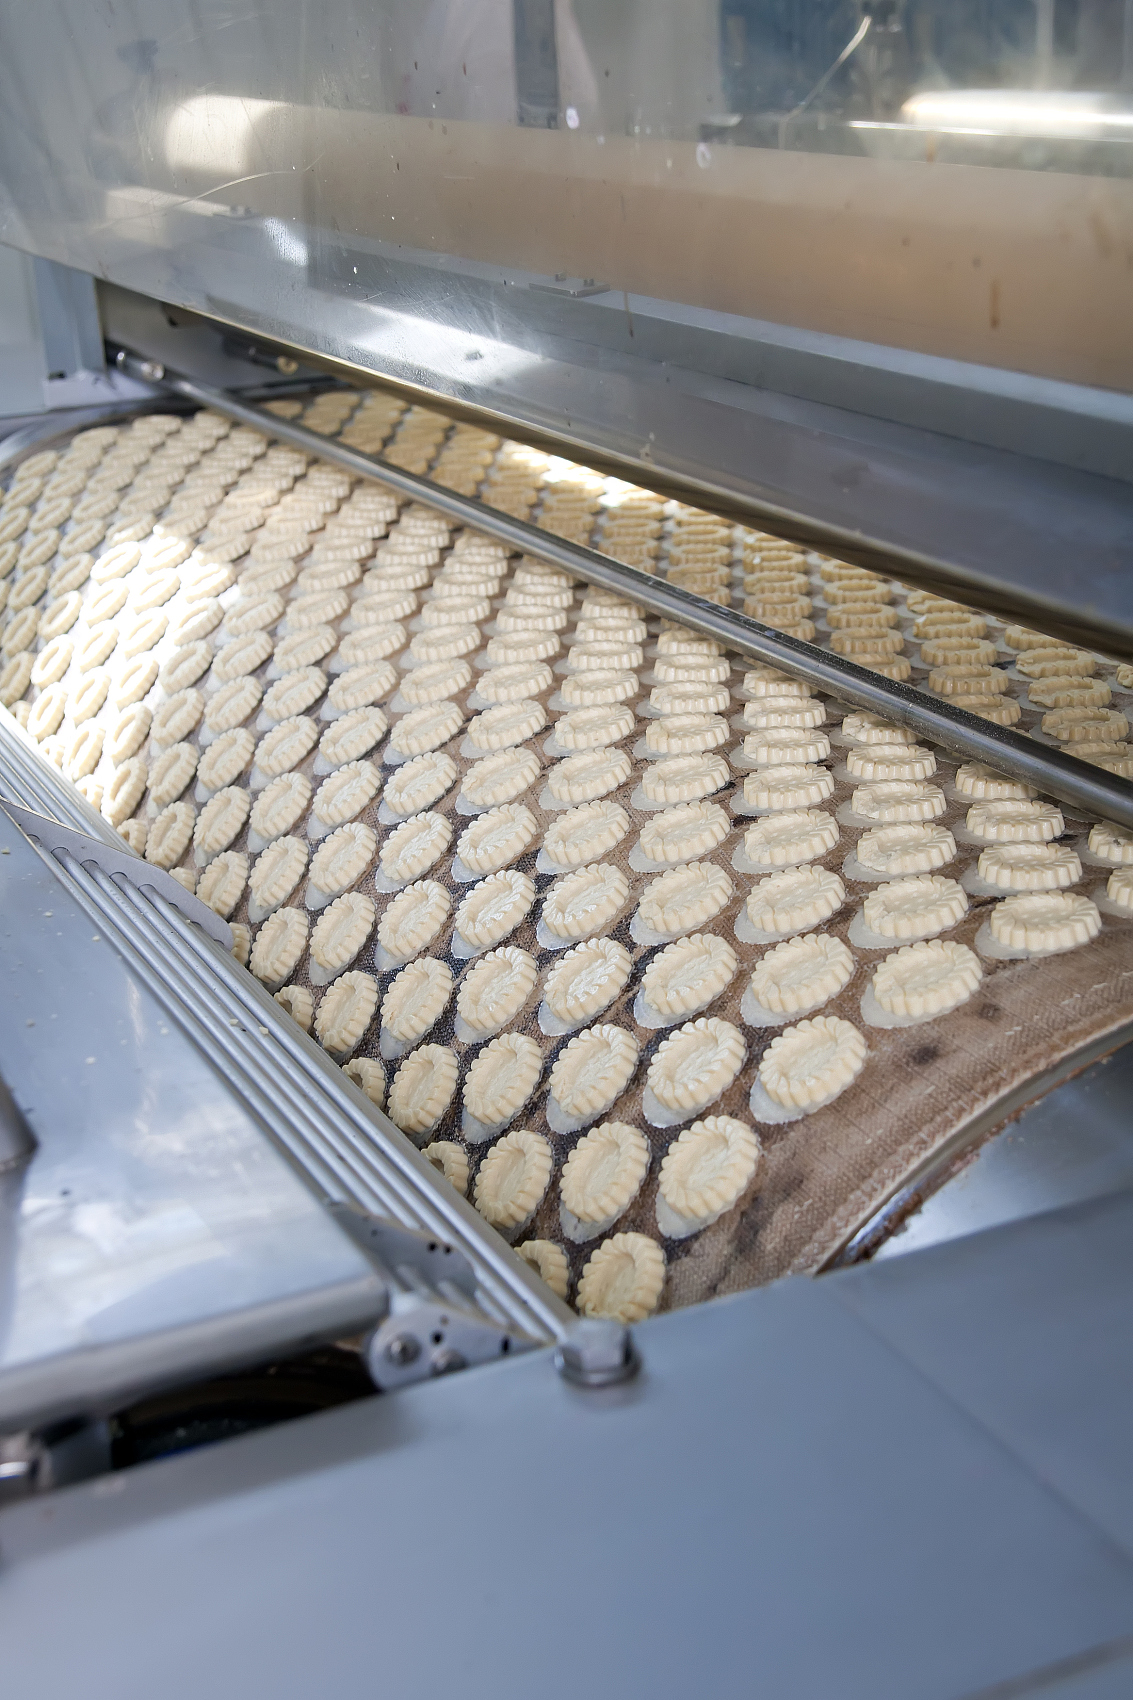 Precio de fábrica de la línea de producción de galletas personalizadas certificadas CE